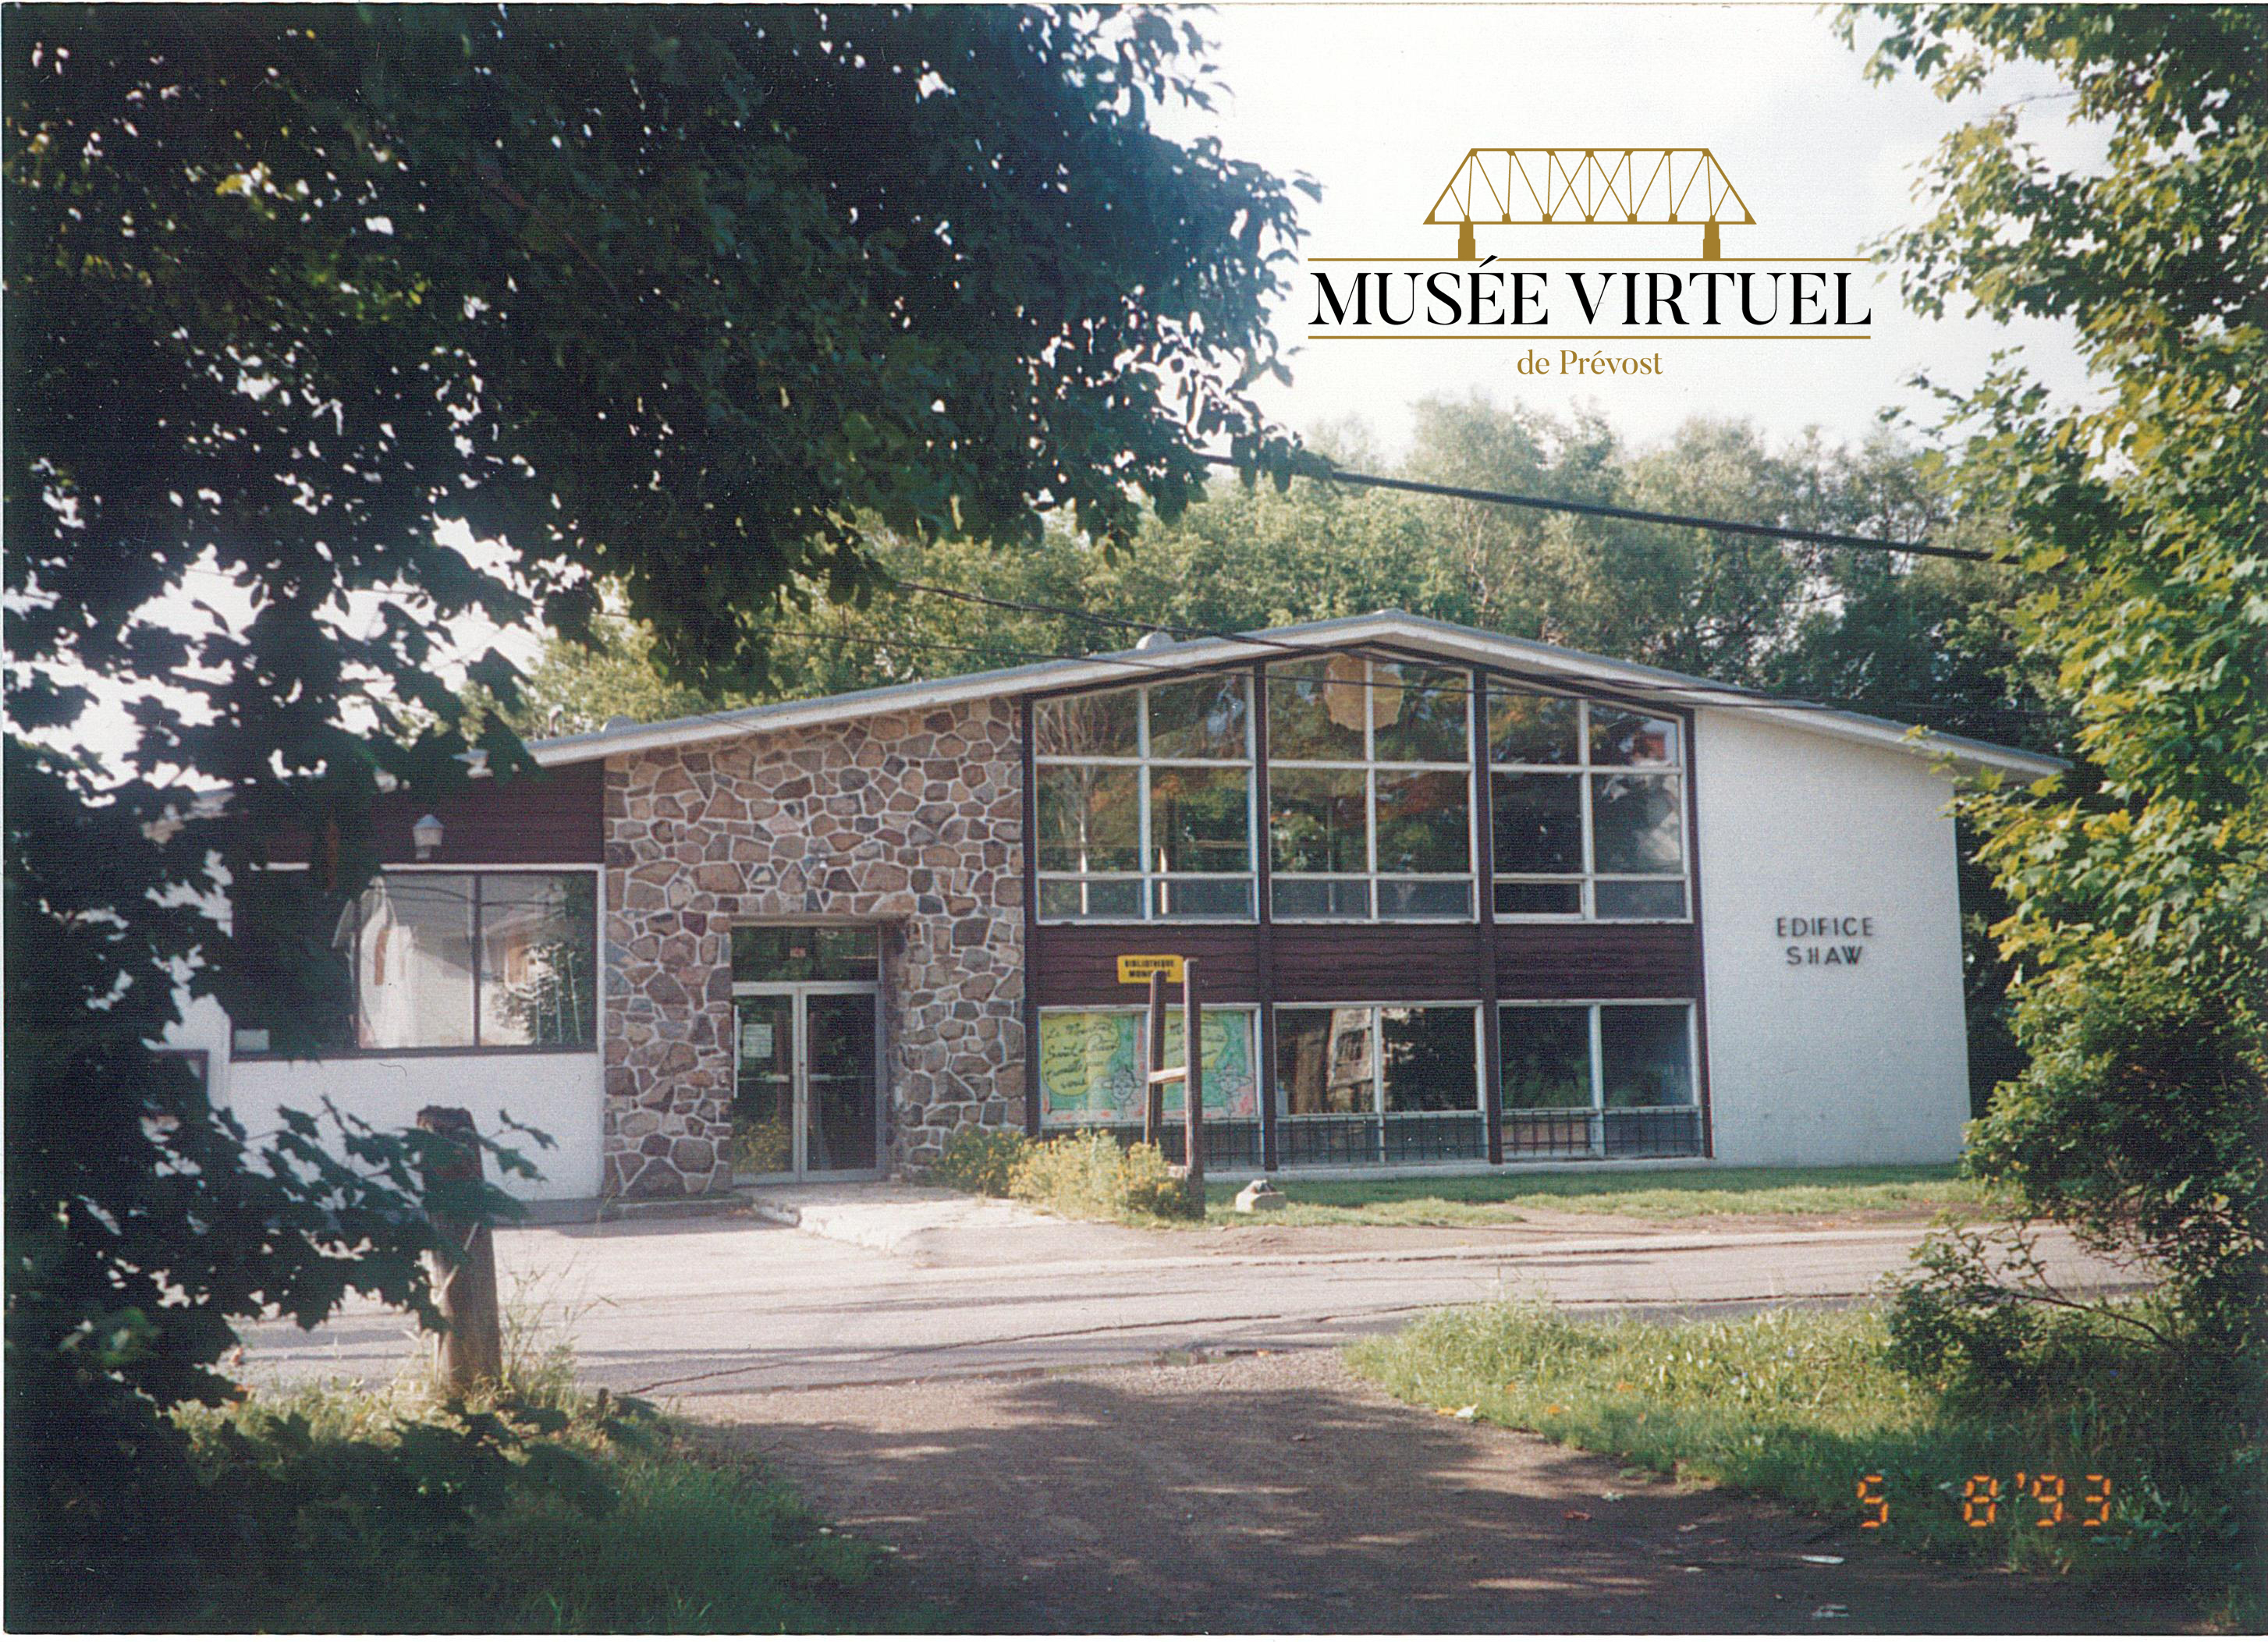 1. Hôtel de ville en 1993 - Collection de la Ville de Prévost